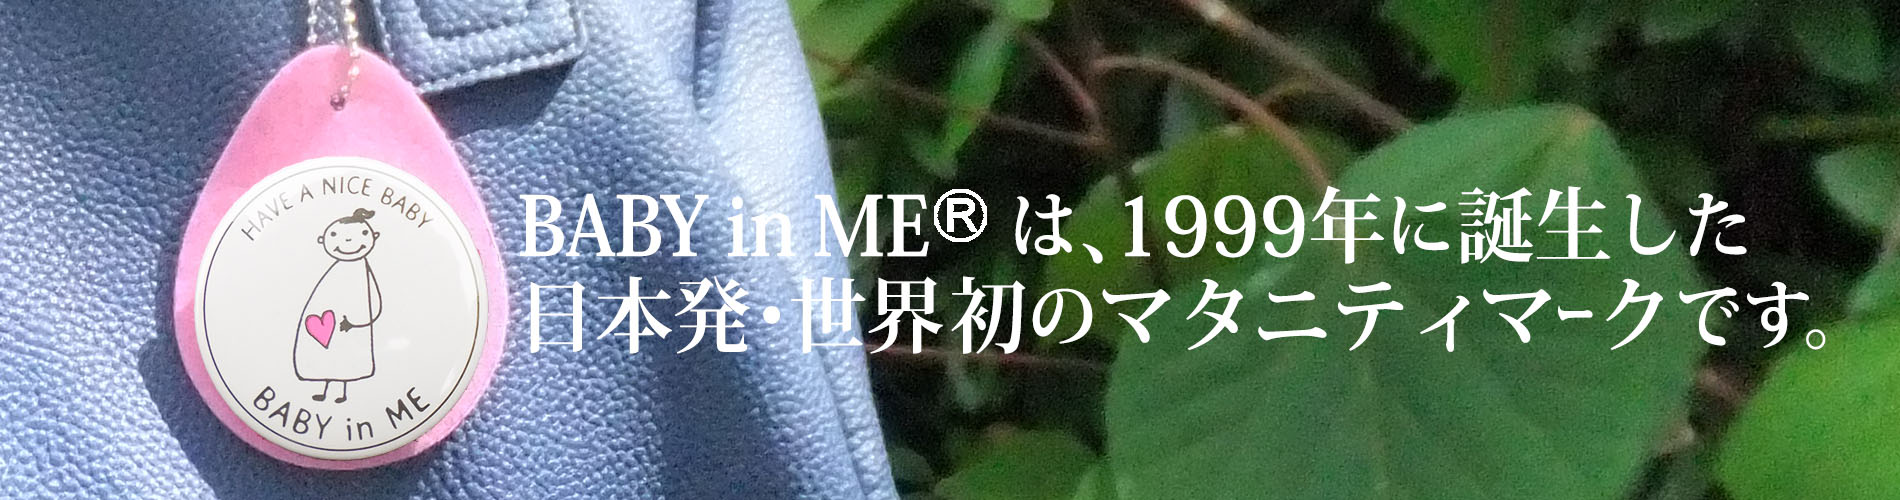 BABY in MEは、1999年に誕生した日本発・世界初のマタニティマークです。